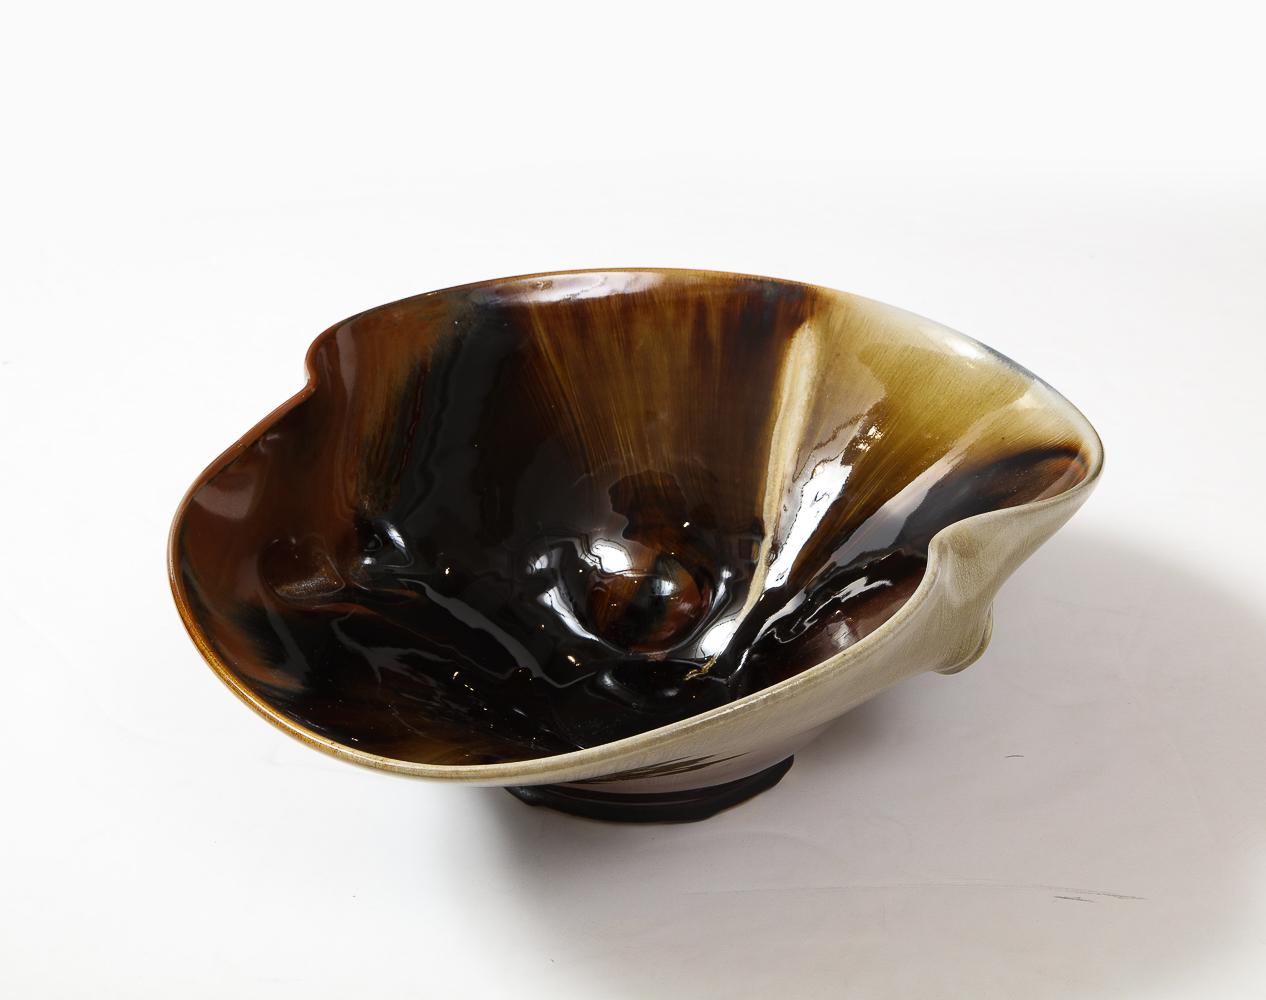 Glazed porcelain. Unique wood fired bowl. Artist signed on underside.